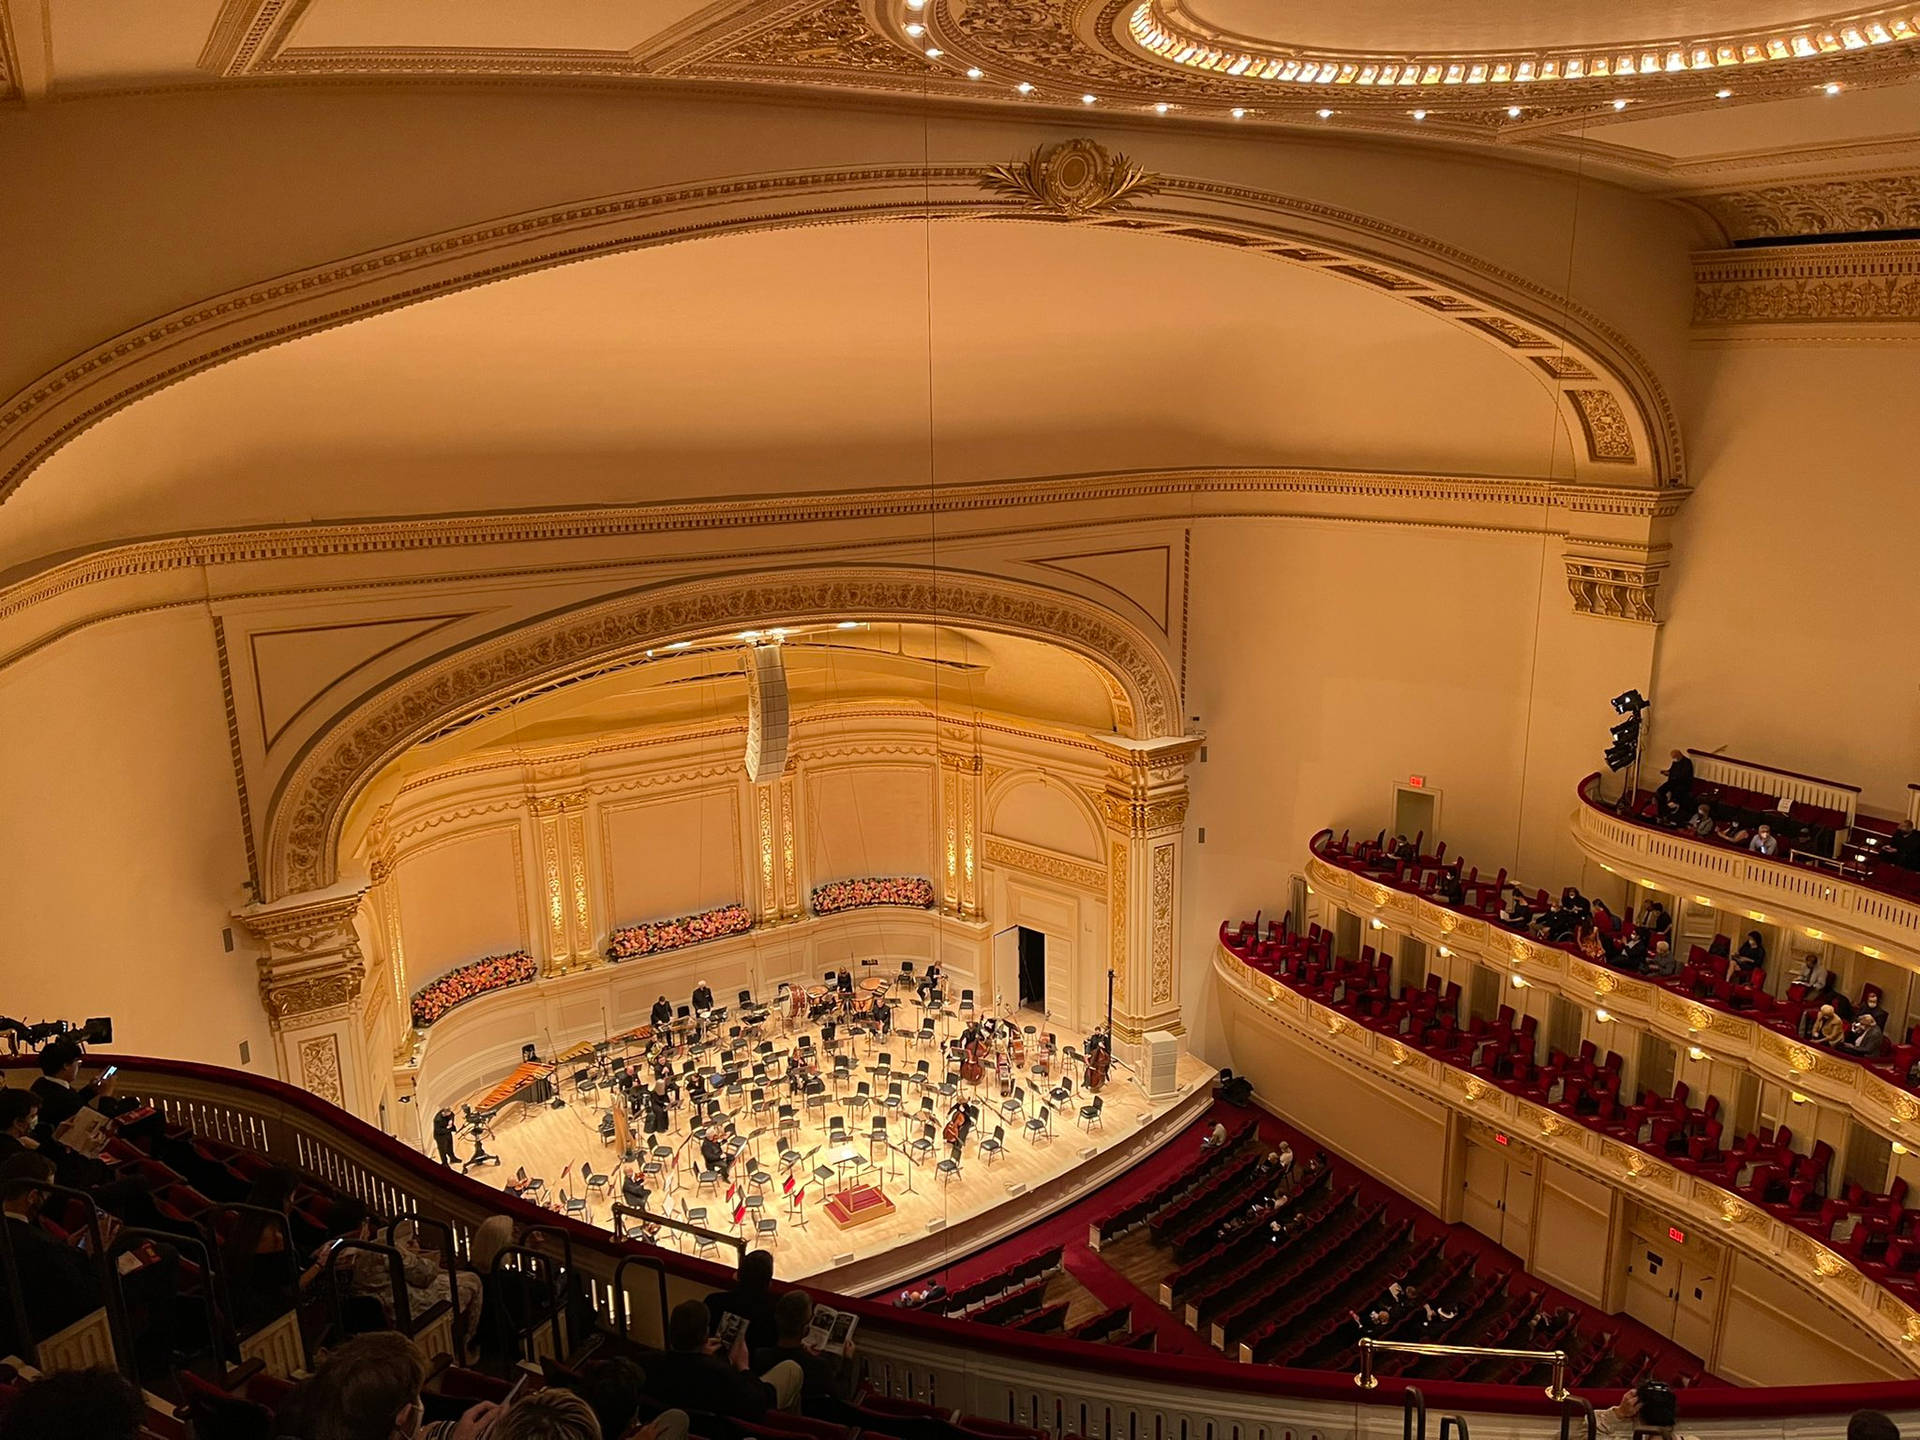 Orchestrasul Palco Del Carnegie Hall Sfondo